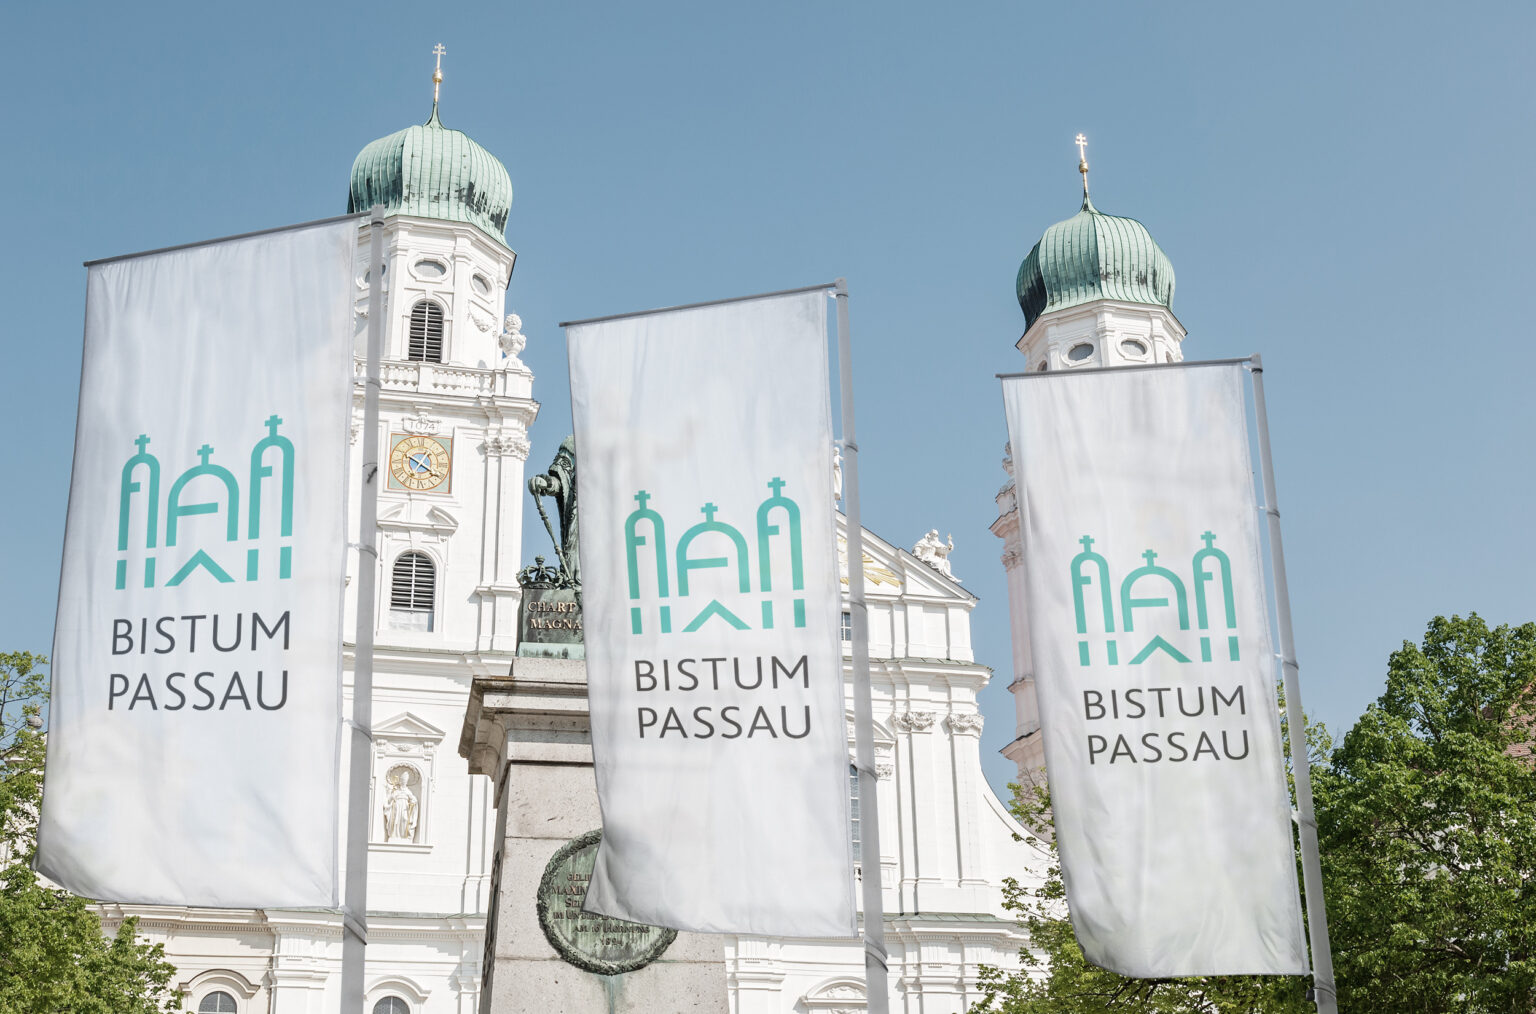 Bistum Passau Fahnen